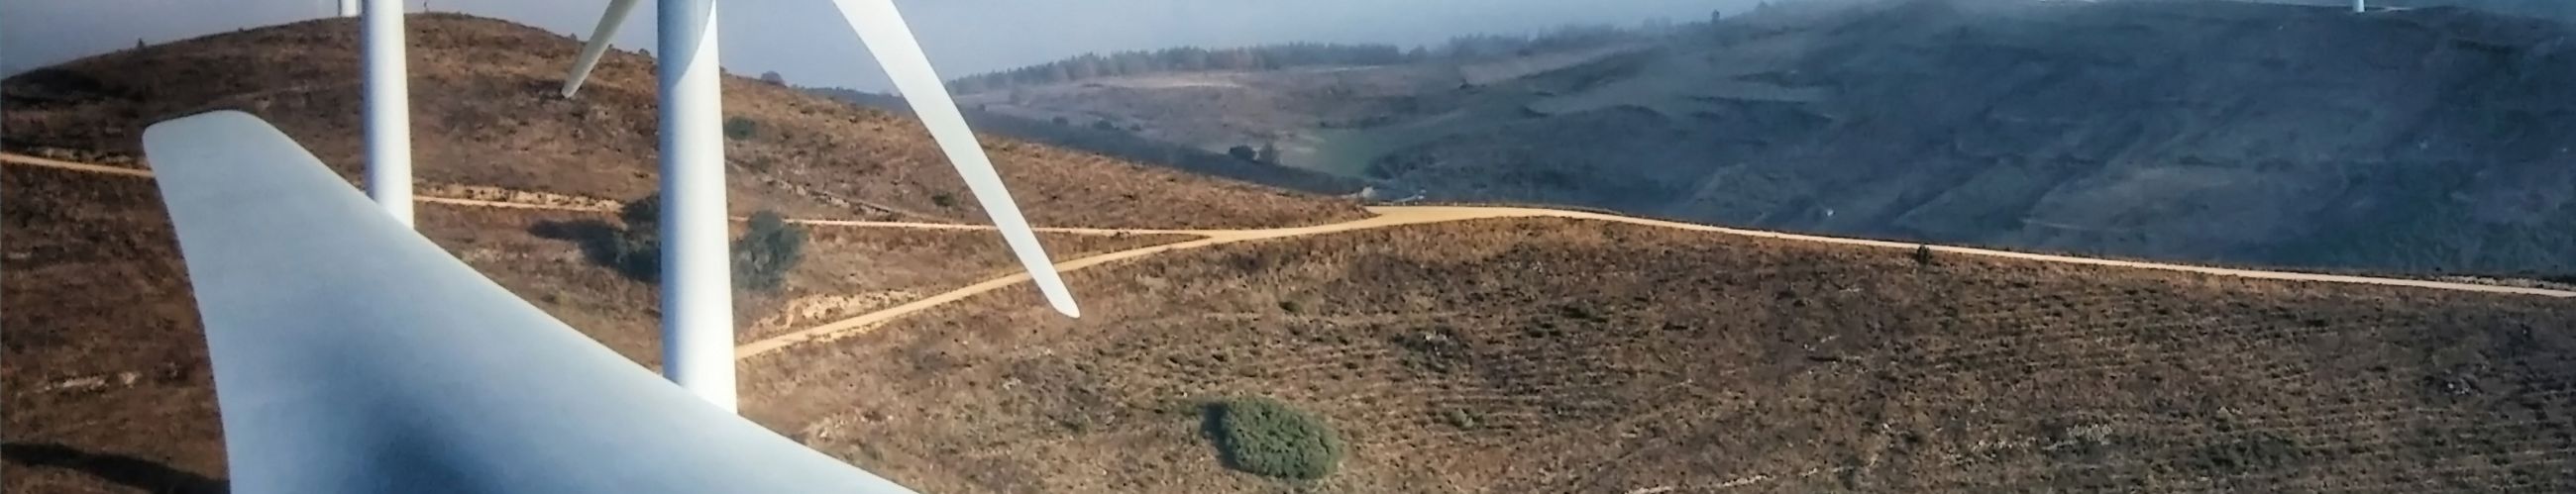 Windkrafträder auf Hügel